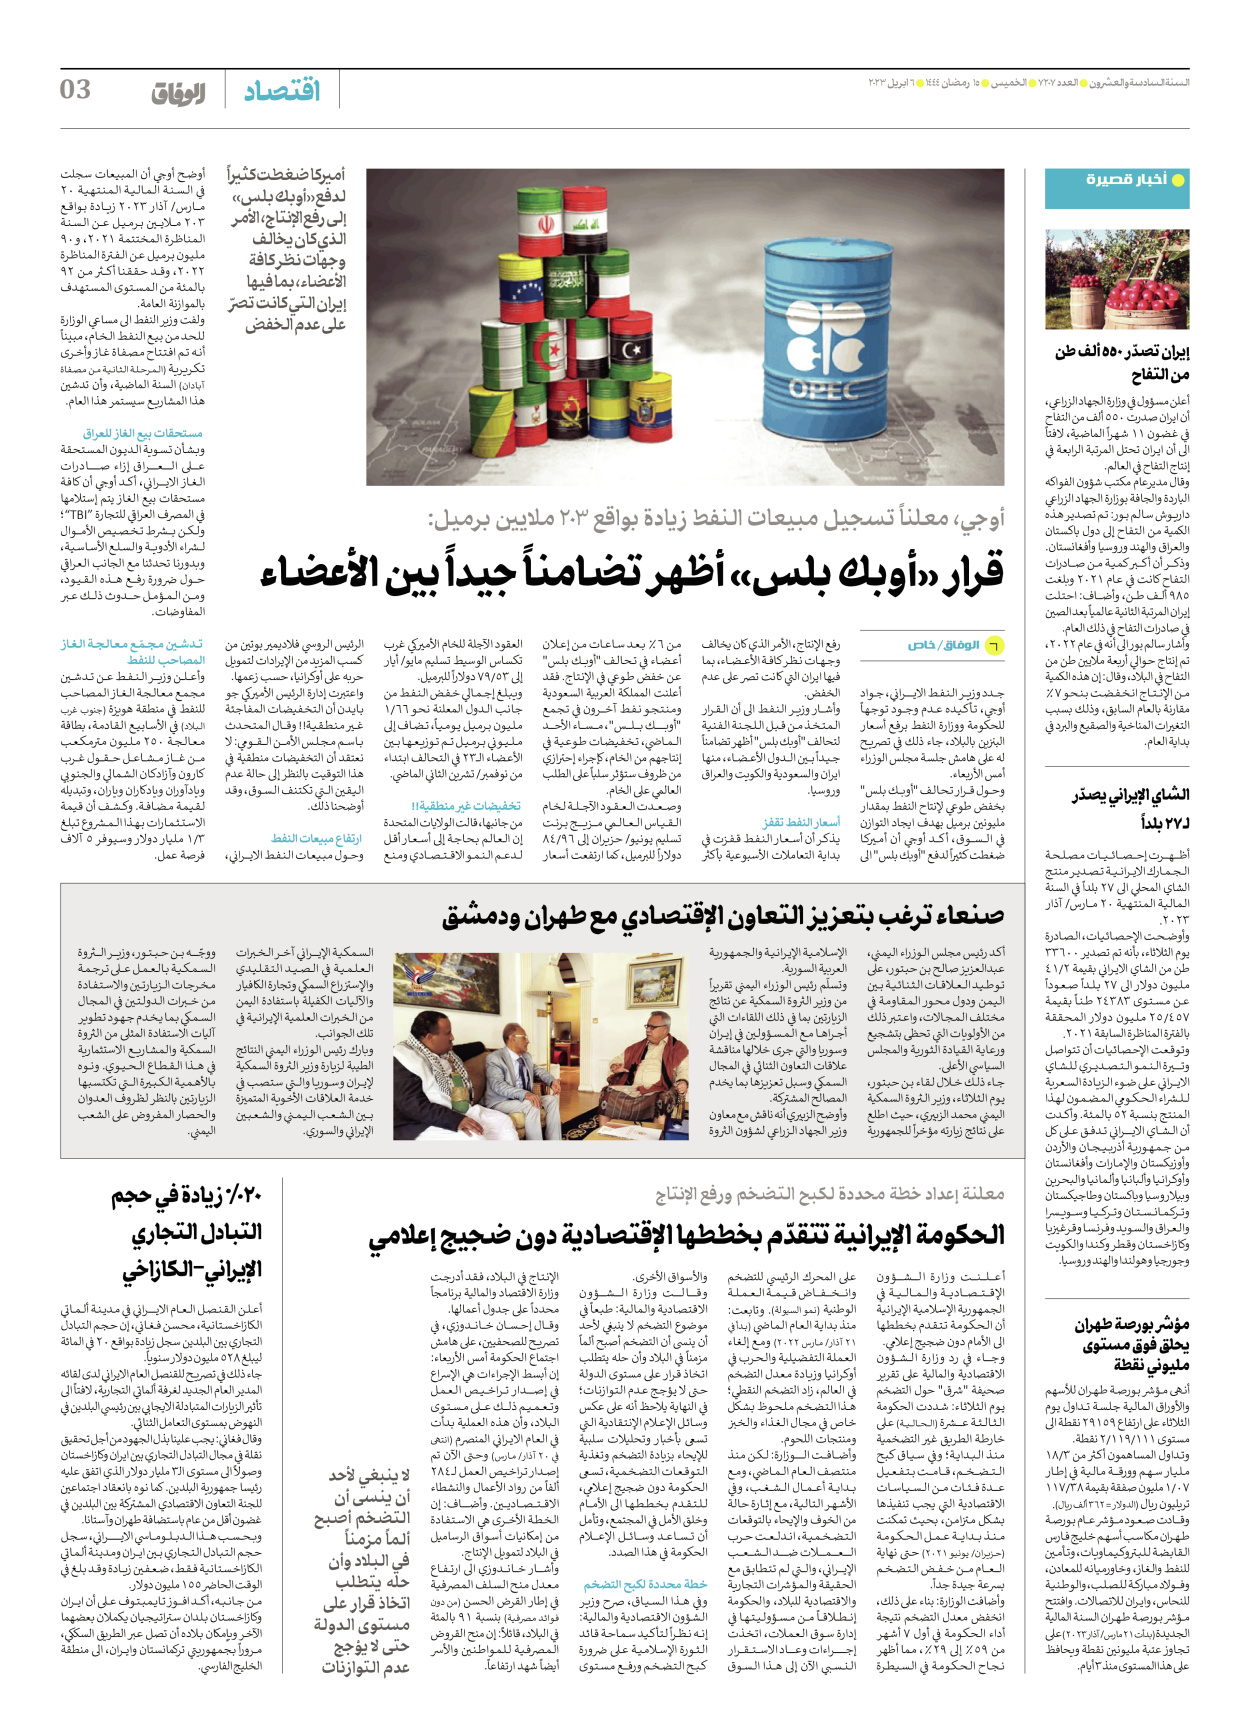 صحیفة ایران الدولیة الوفاق - العدد سبعة آلاف ومائتان وسبعة - ٠٦ أبريل ٢٠٢٣ - الصفحة ۳